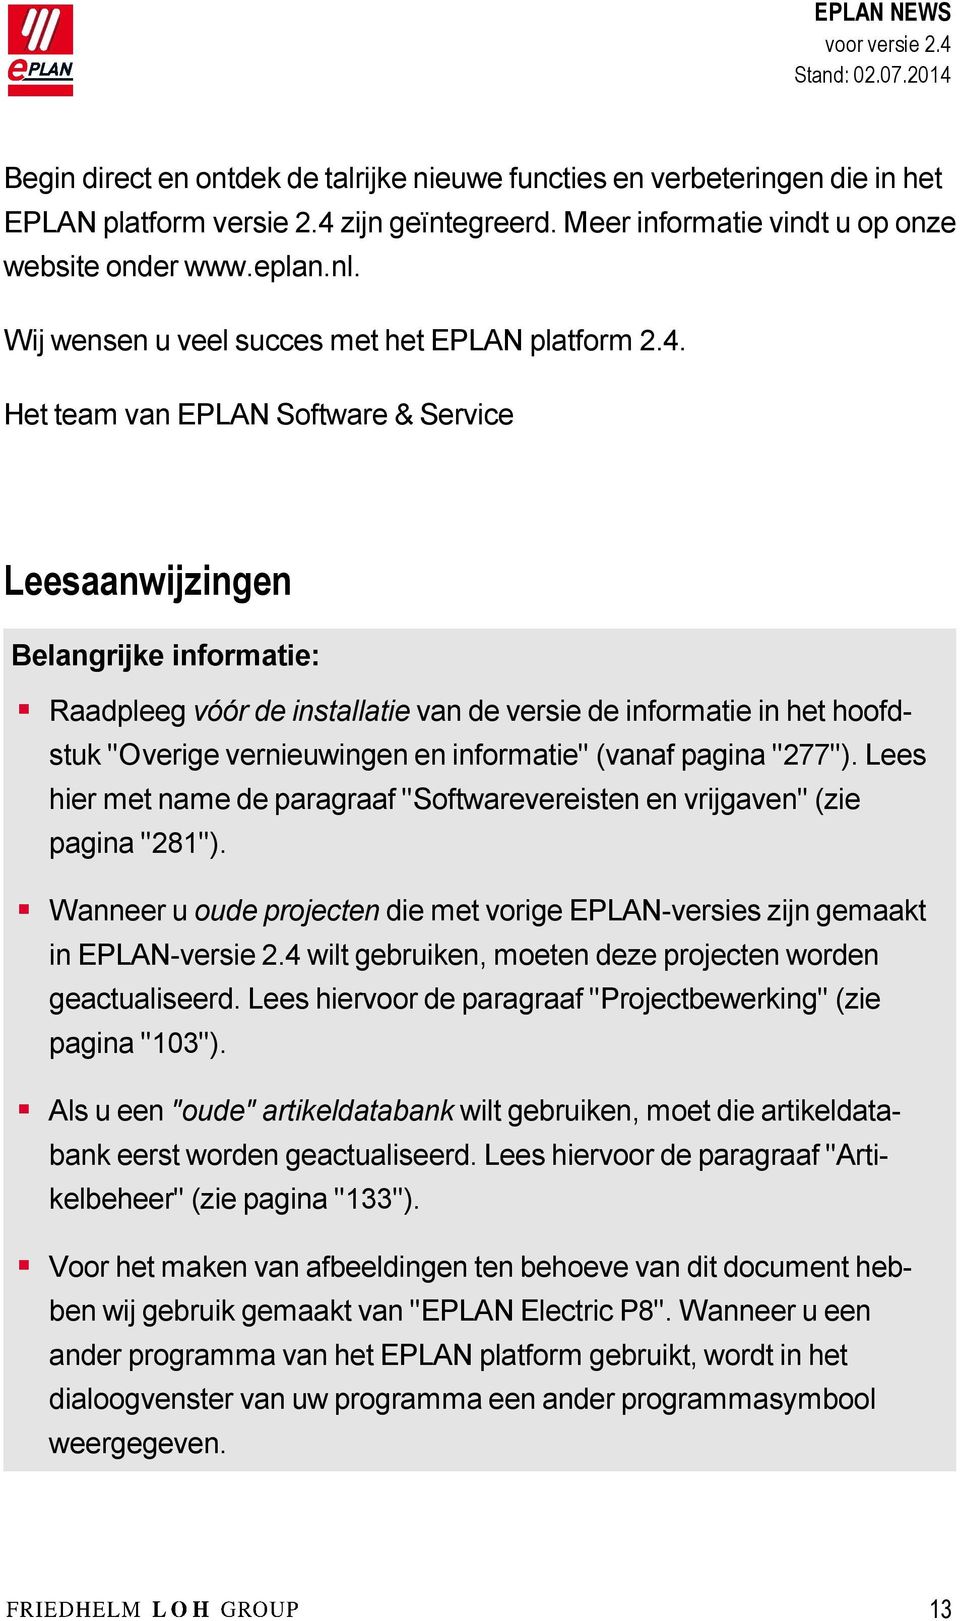 Het team van EPLAN Software & Service Leesaanwijzingen Belangrijke informatie: Raadpleeg vóór de installatie van de versie de informatie in het hoofdstuk "Overige vernieuwingen en informatie" (vanaf